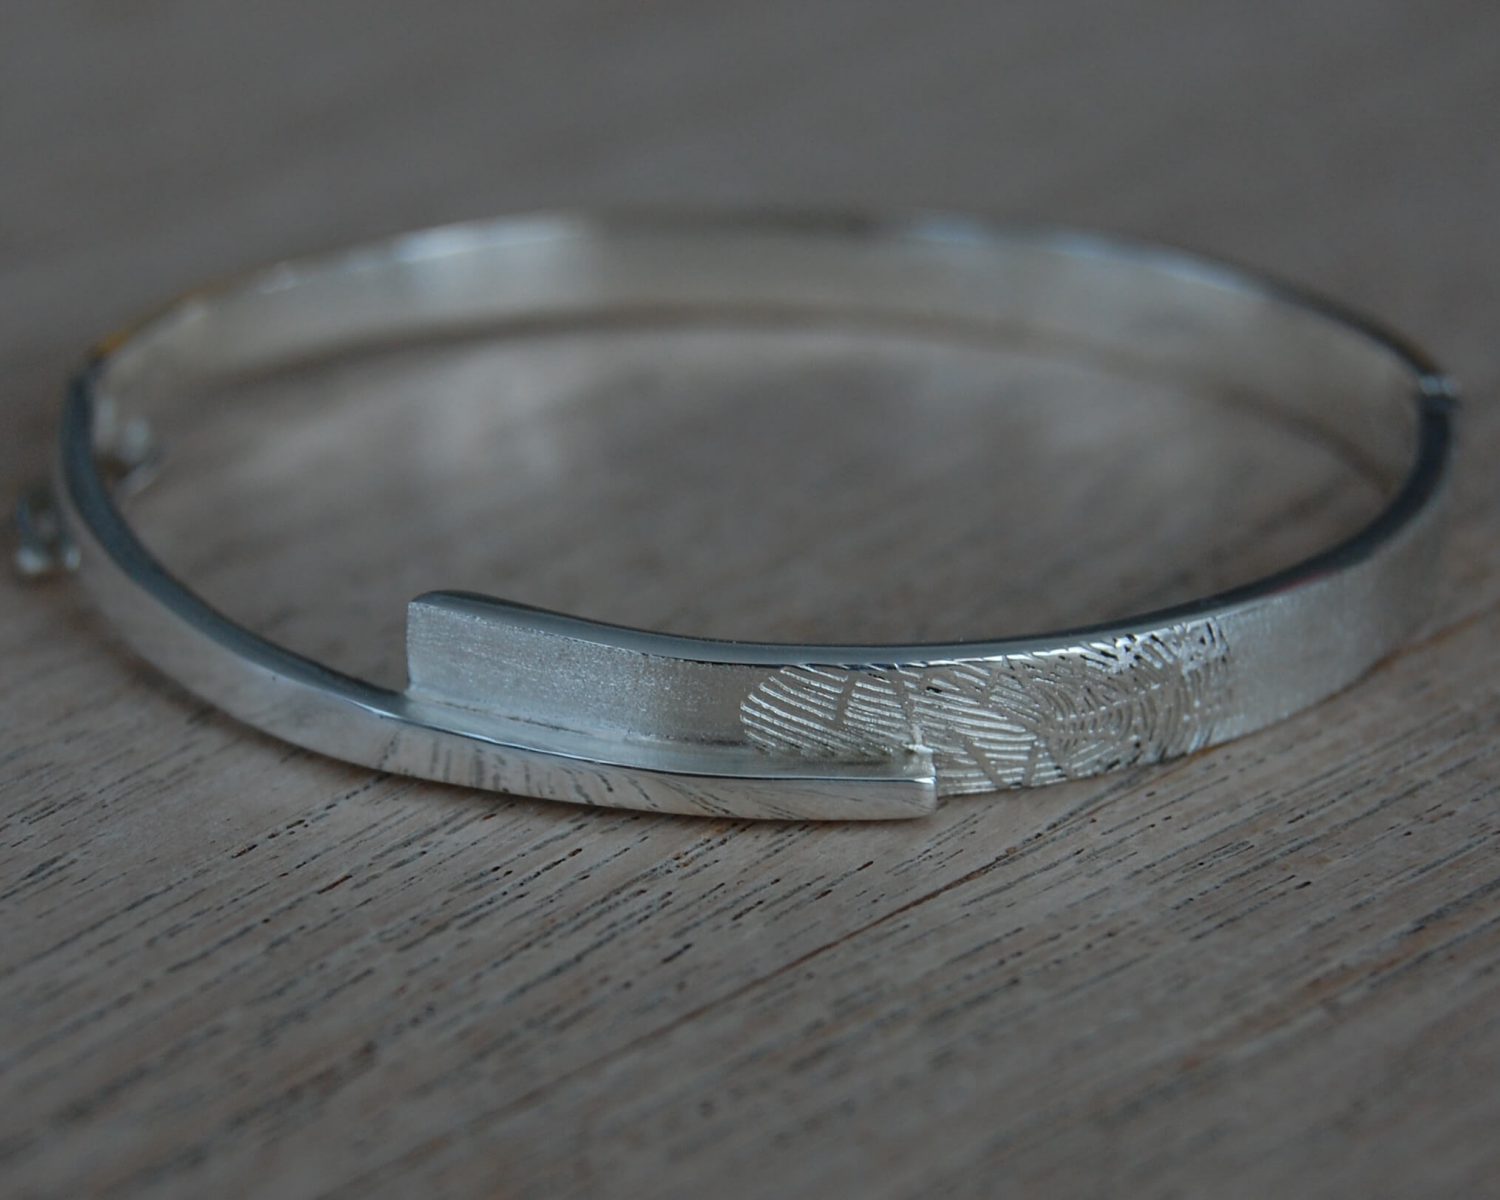 Symbolische armband in zilver - inclusief gelaserde vingerafdruk.